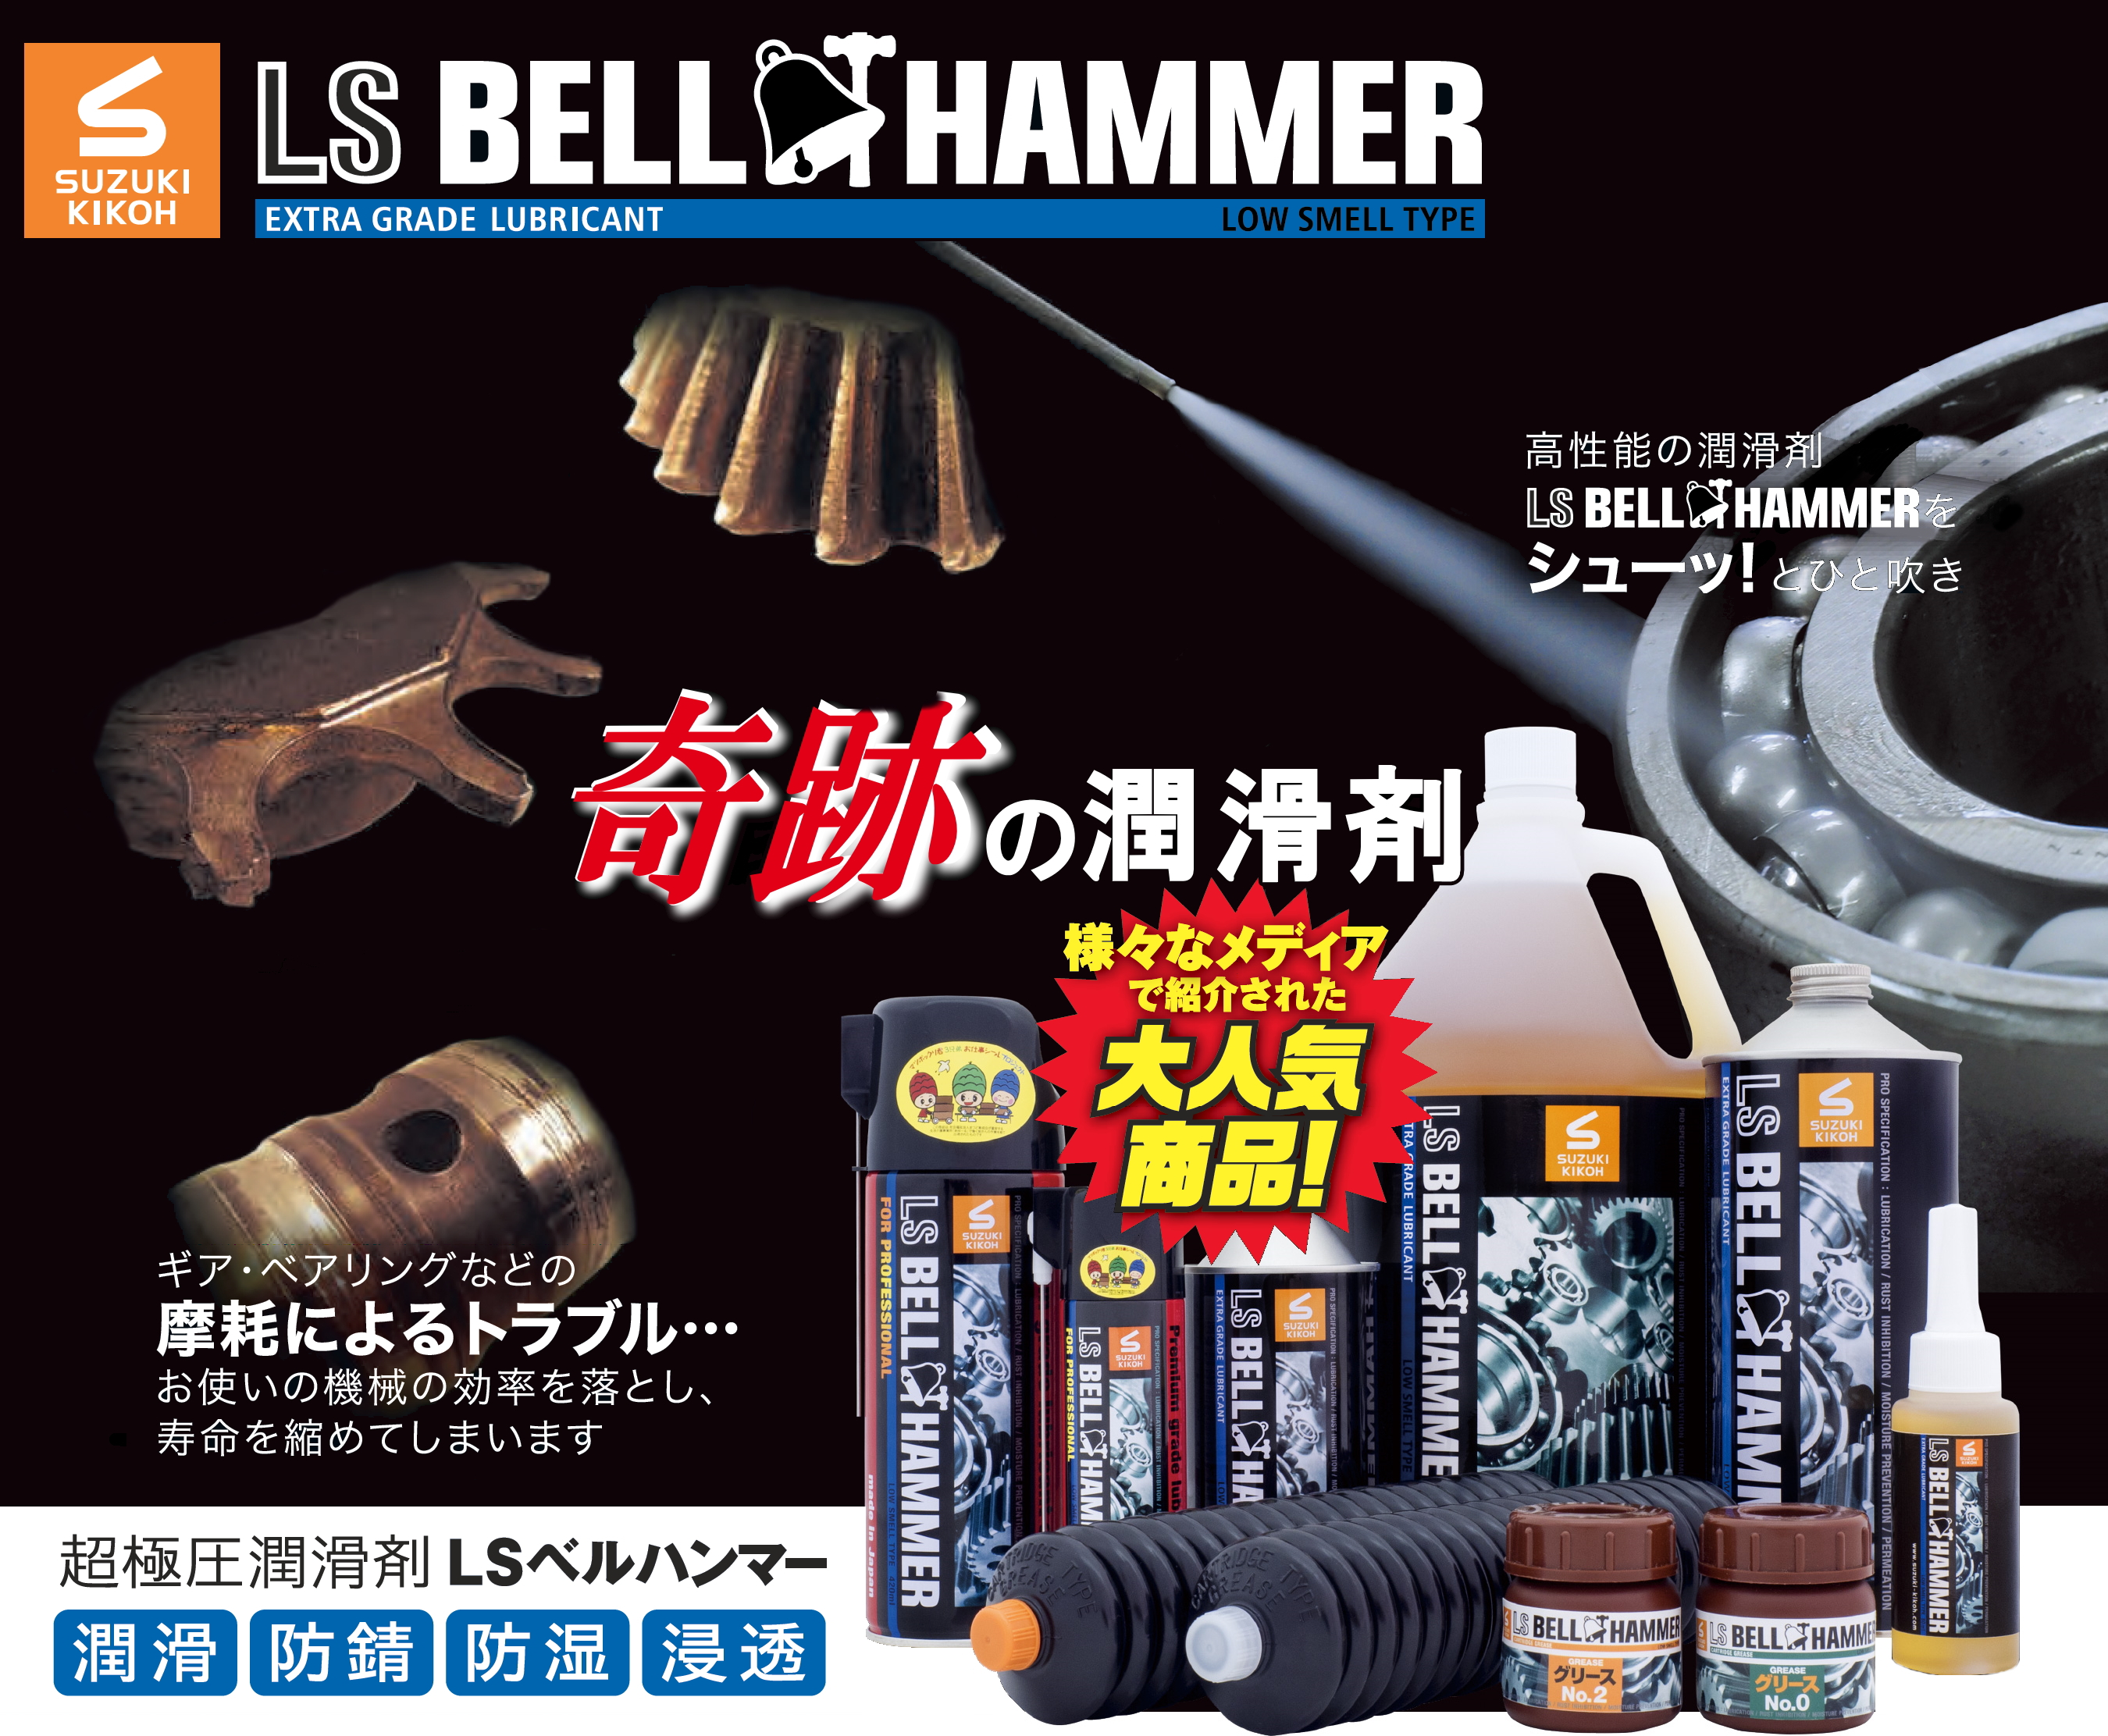 LSベルハンマー - 奇跡の潤滑剤、様々なメディアで紹介された大人気商品